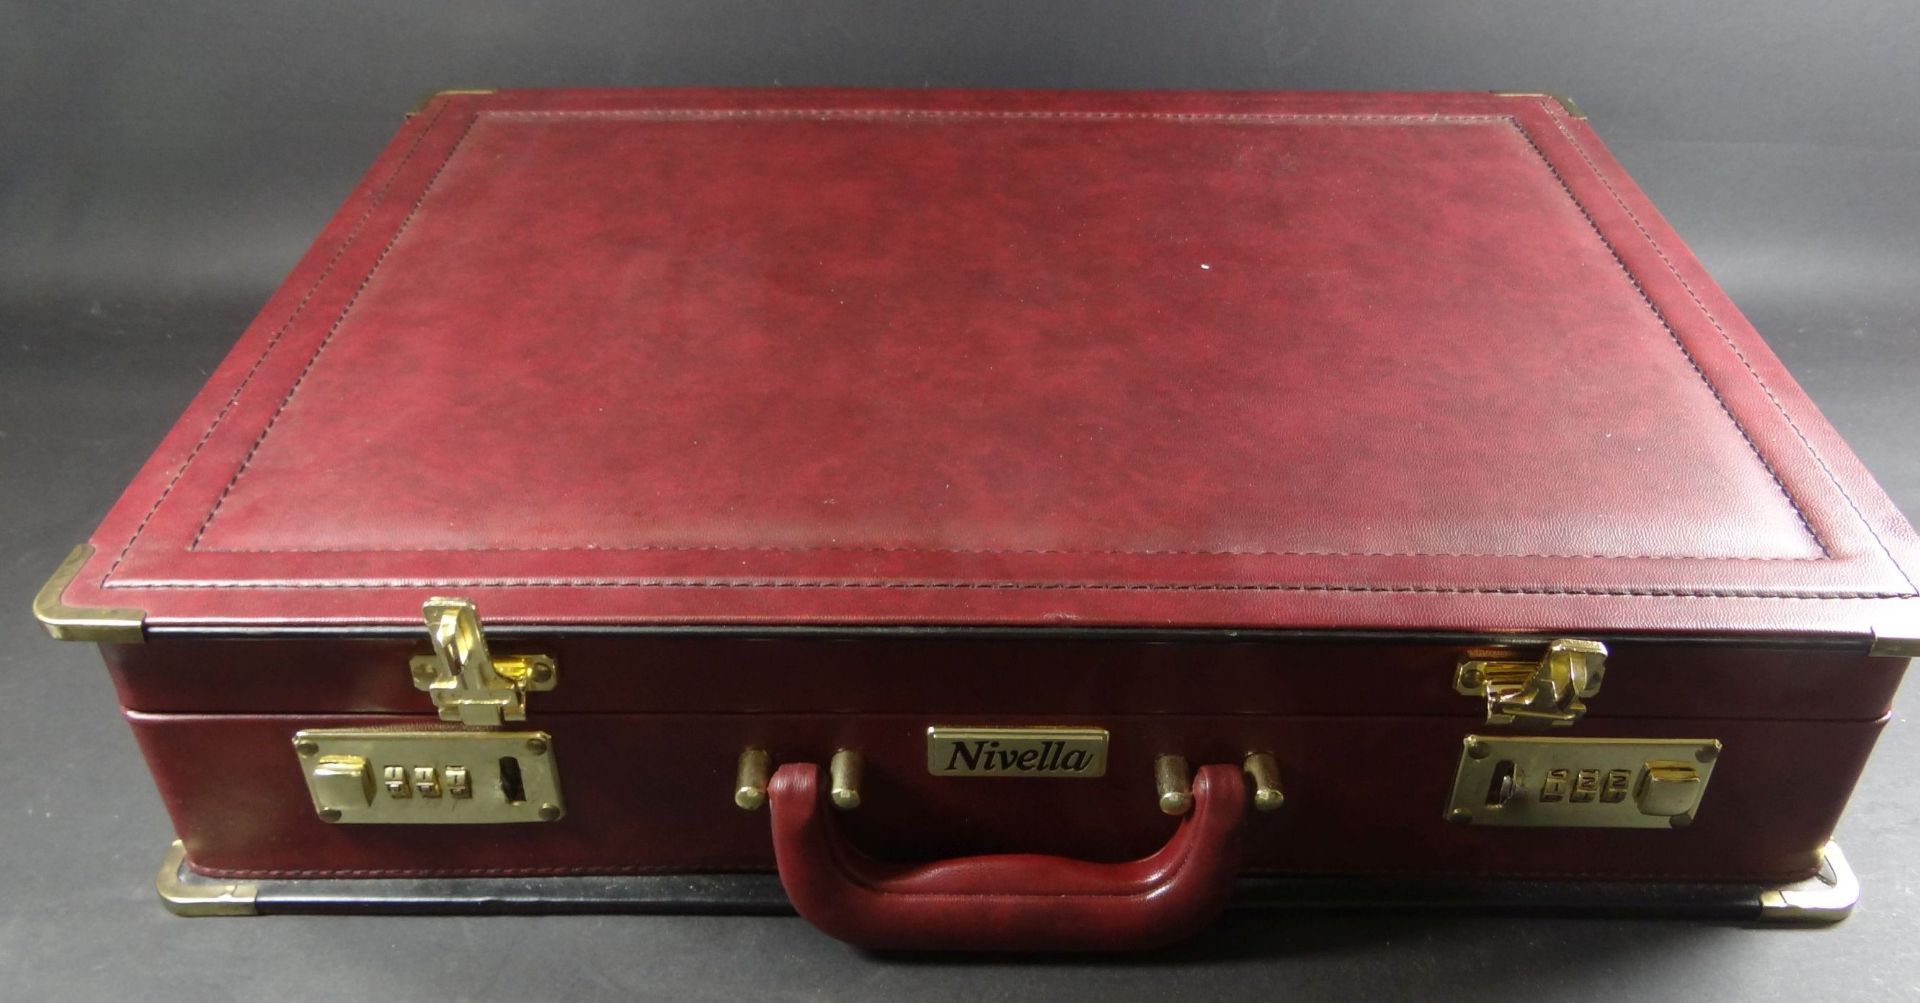 Koffer mit Besteck "Nivella" Solingen, vergoldet, 70 Teile, komplett für 12 Personen, neuwertig - Bild 3 aus 3